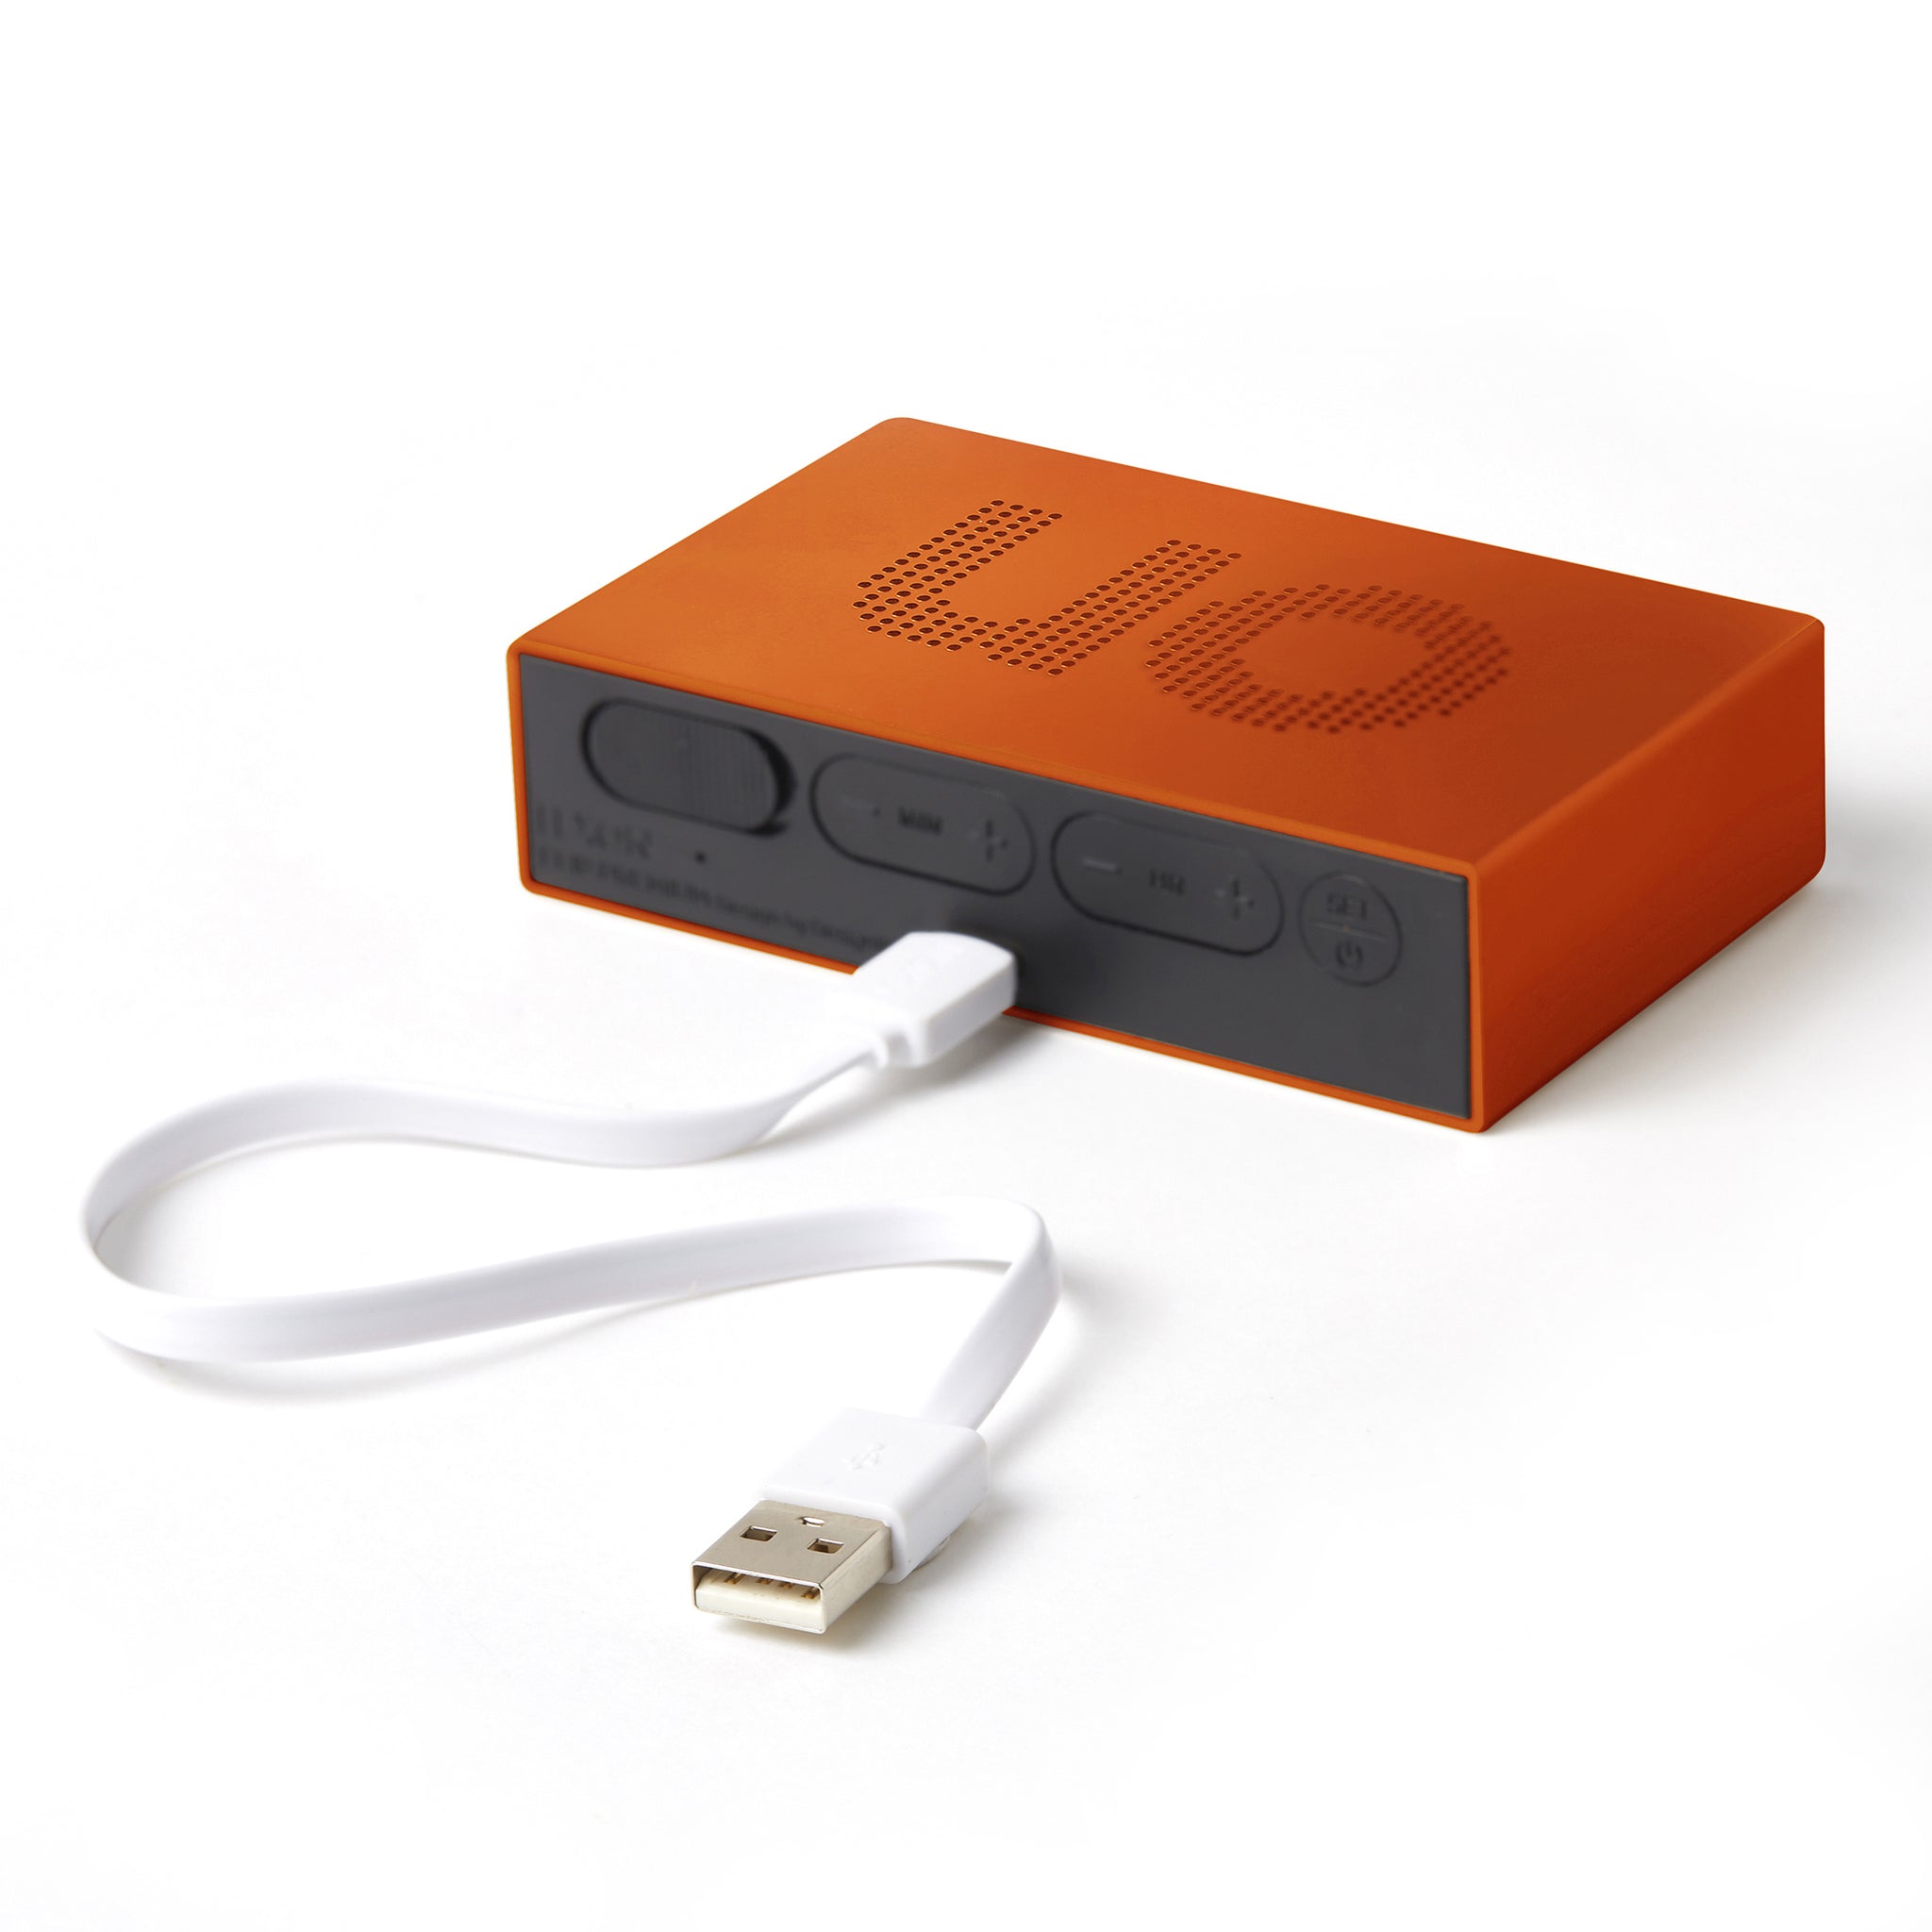 Lexon Flip Premium Wekker Oranje│Art. LR152O1│achterkant met USB-kabel